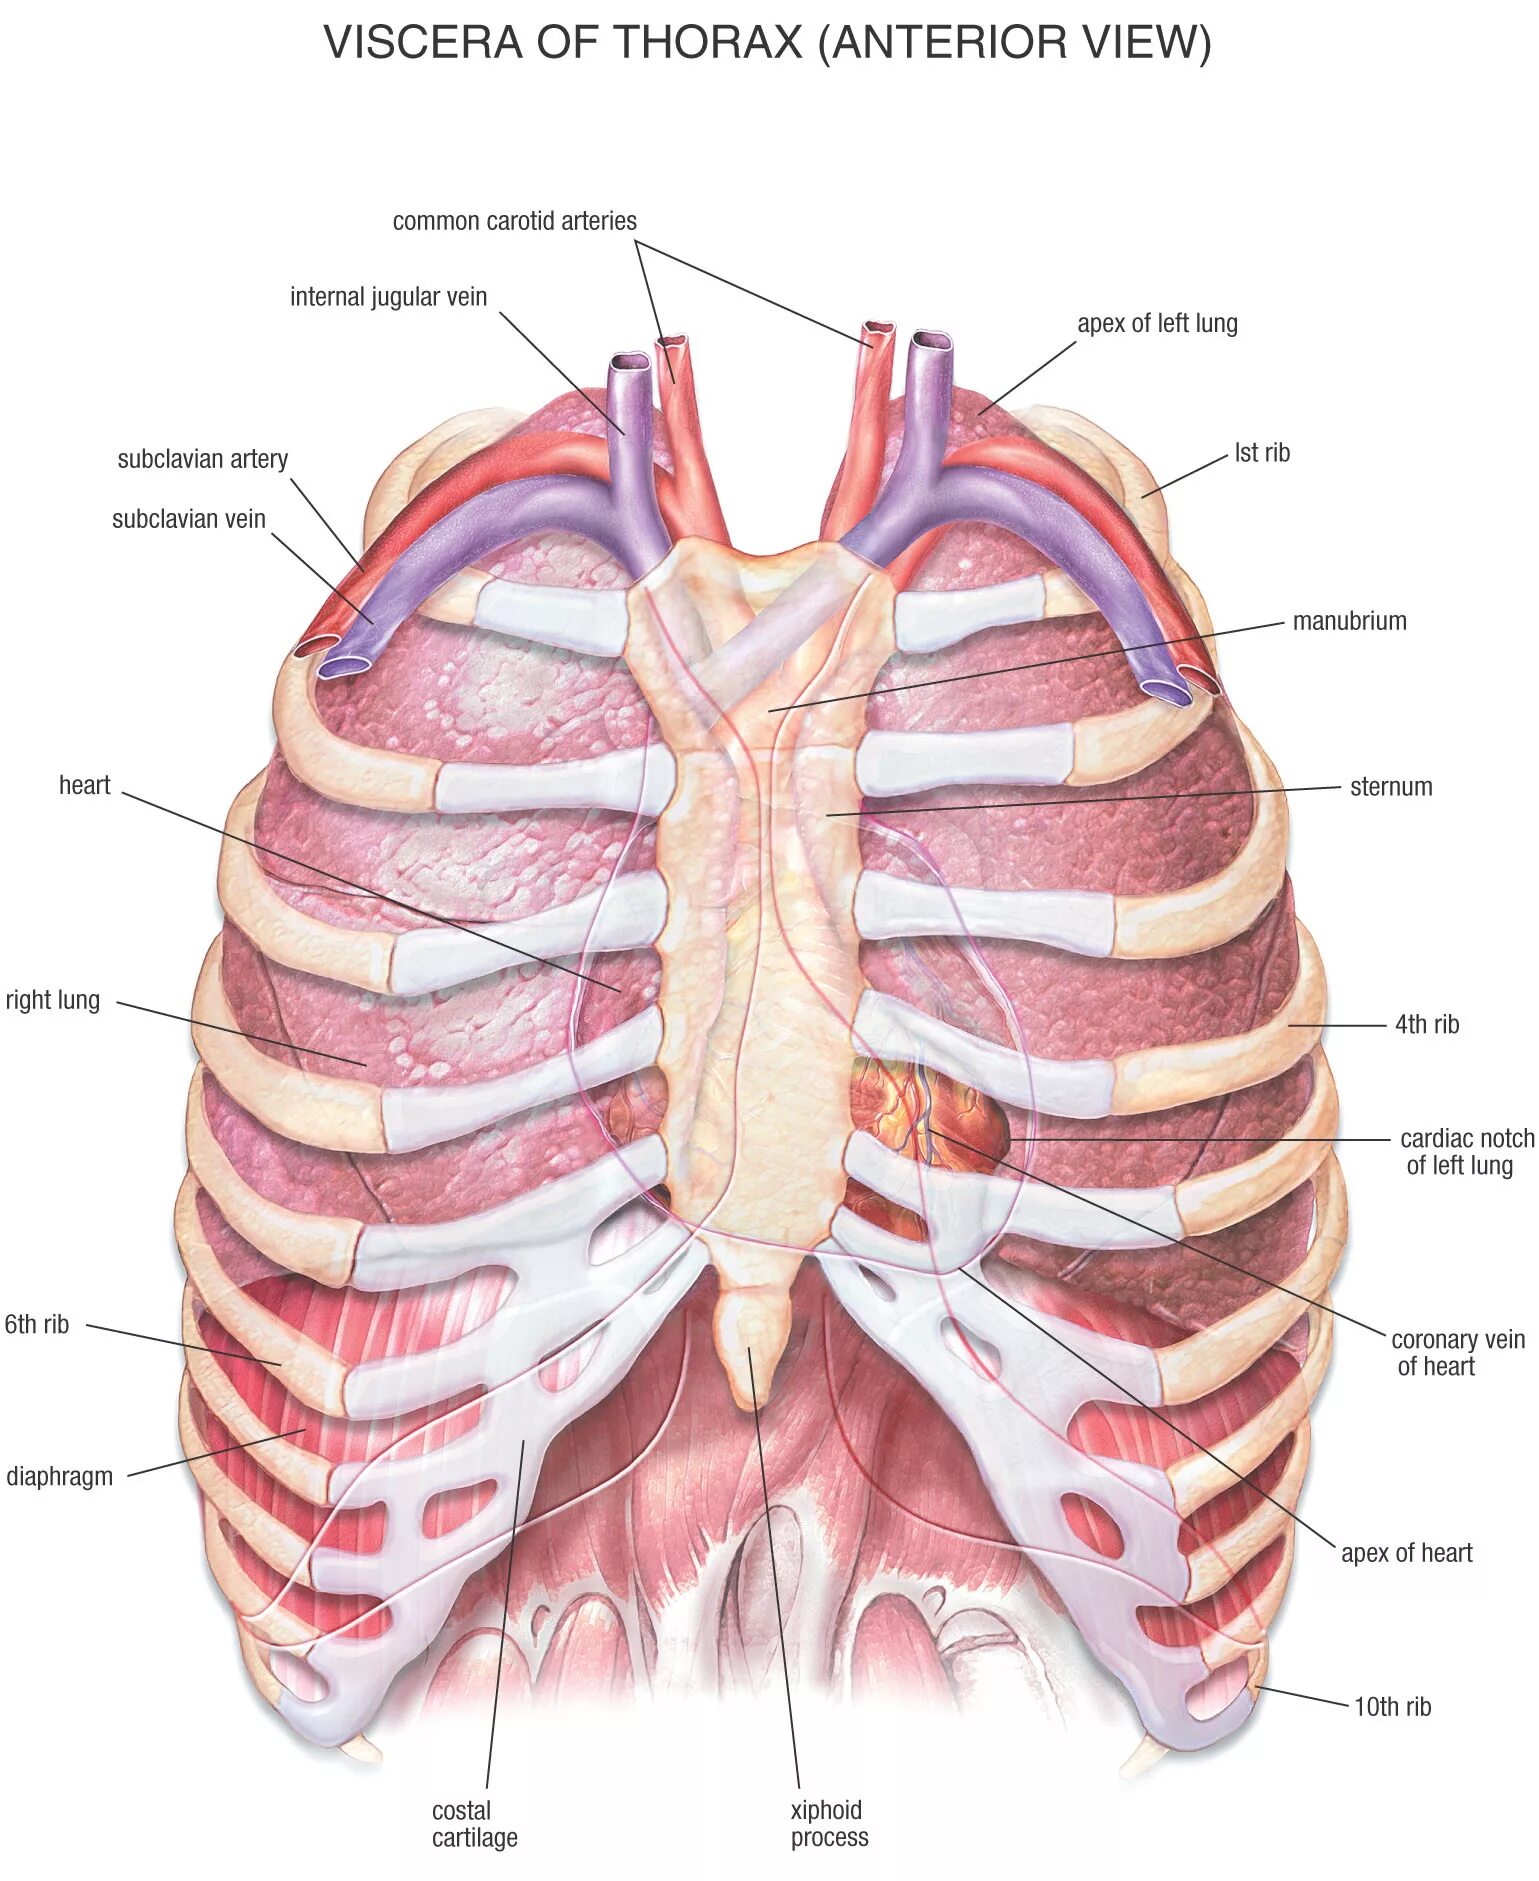 Местоположение легких. Анатомия органов грудной клетки. Анатомическое строение грудной клетки. Анатомический атлас грудной клетки. Легкие в грудной клетке анатомия.